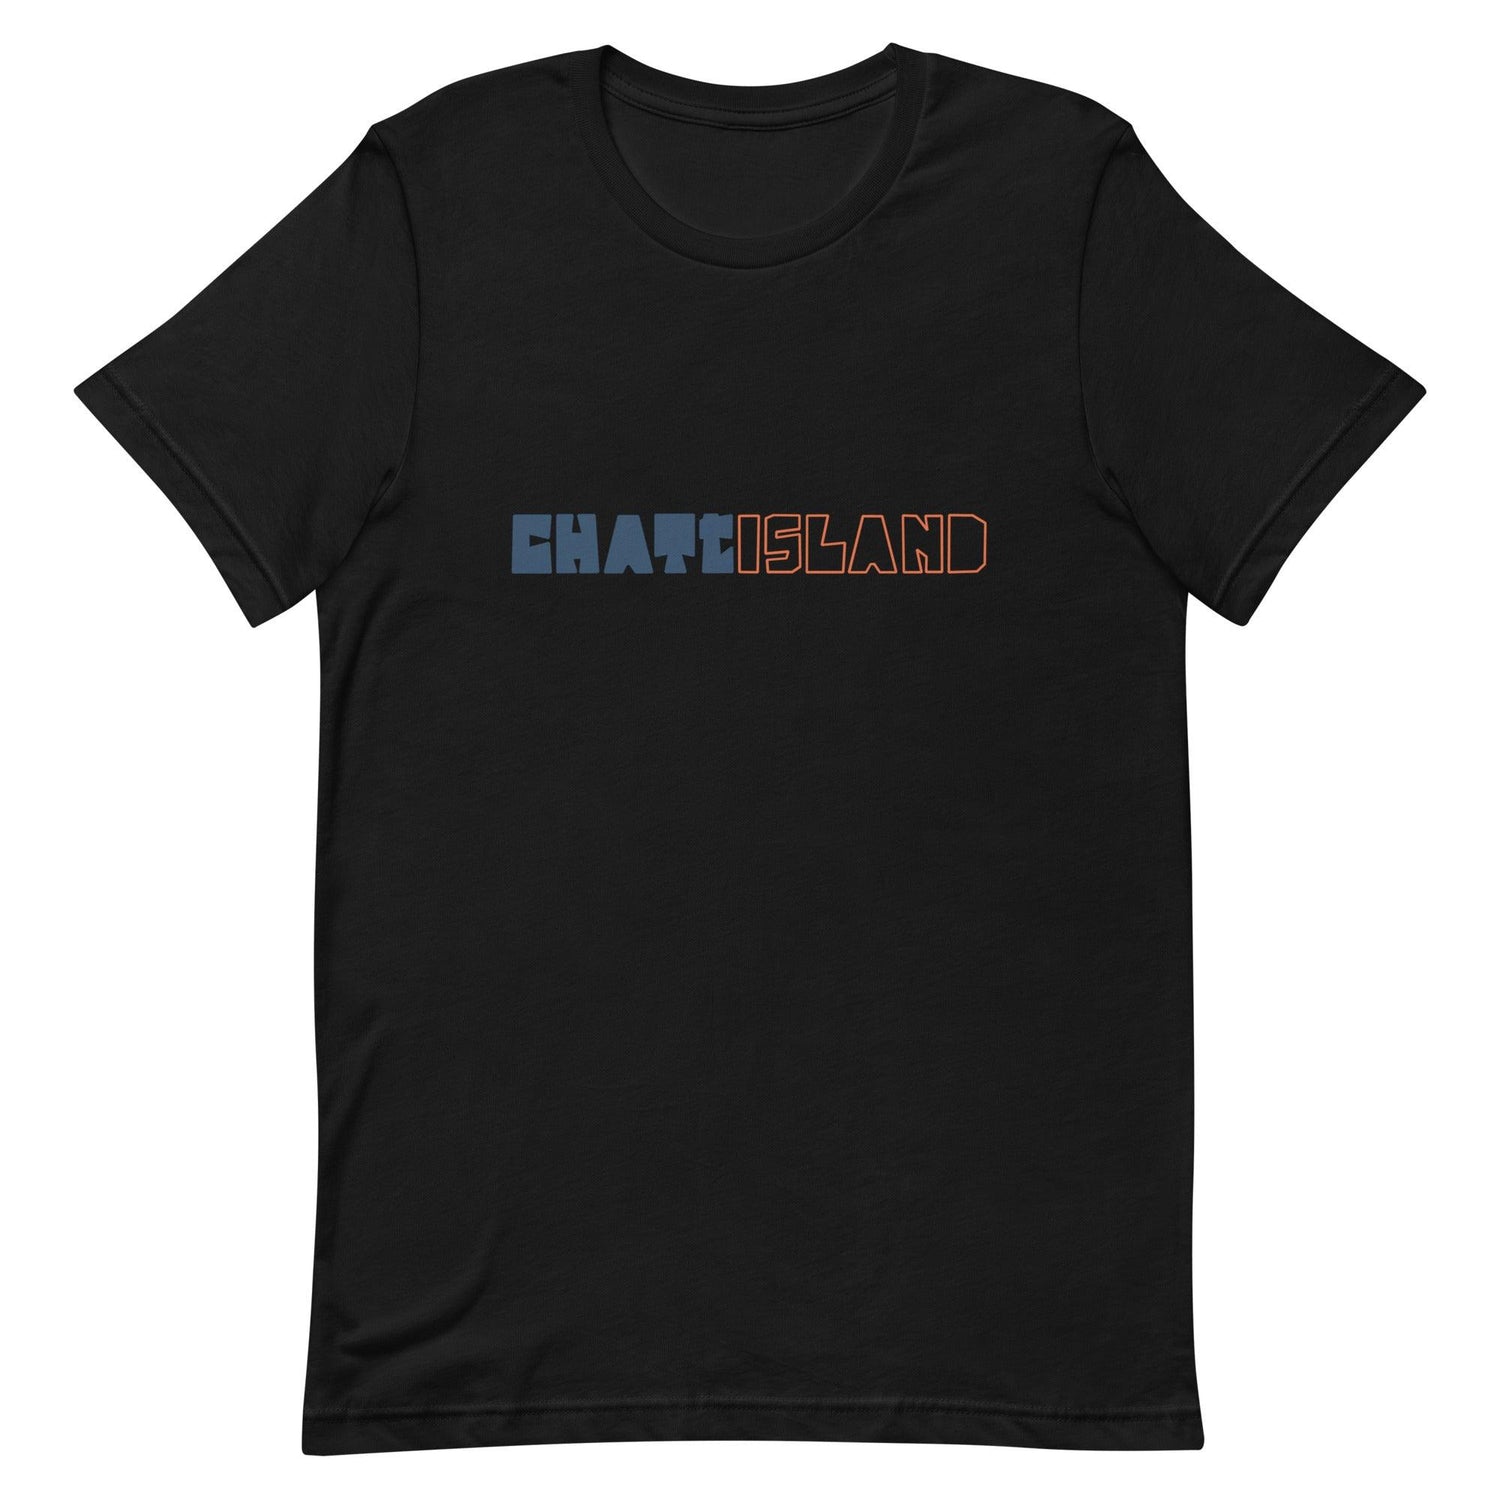 Clifford Chattman “Chattisland” t-shirt - Fan Arch